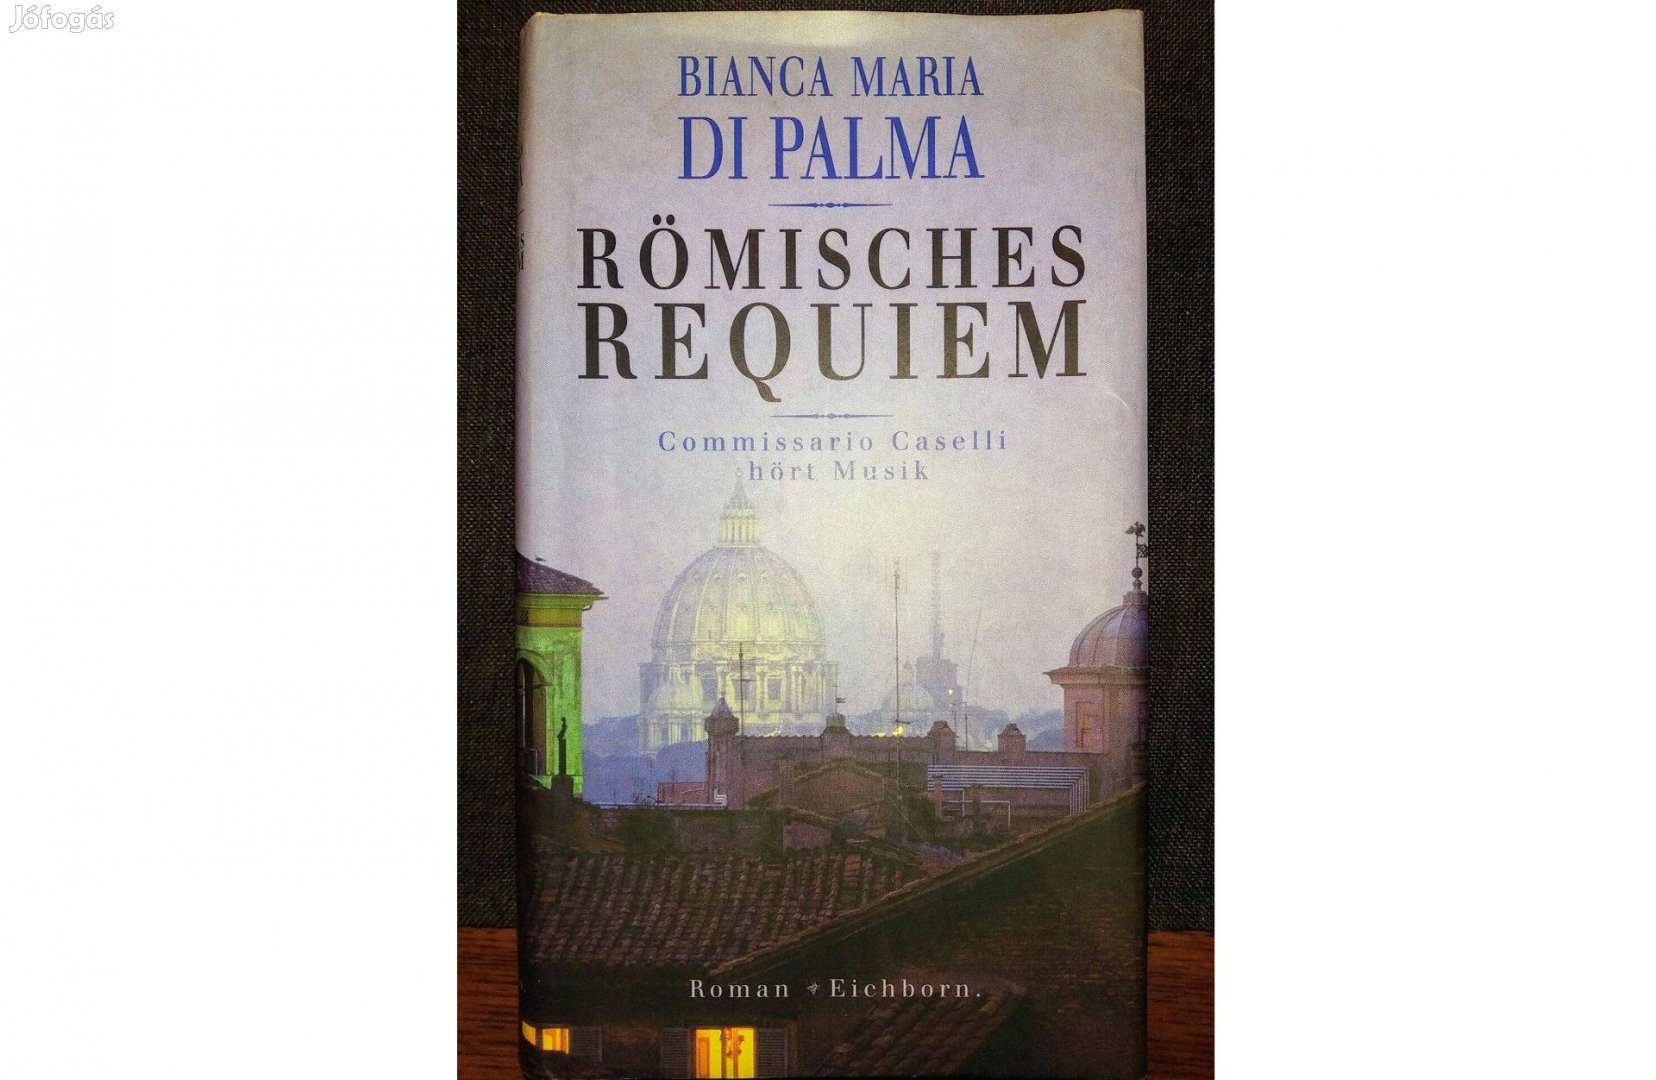 Römisches Requiem. Commissario Caselli Hört Musik by Bianca Maria Dipa